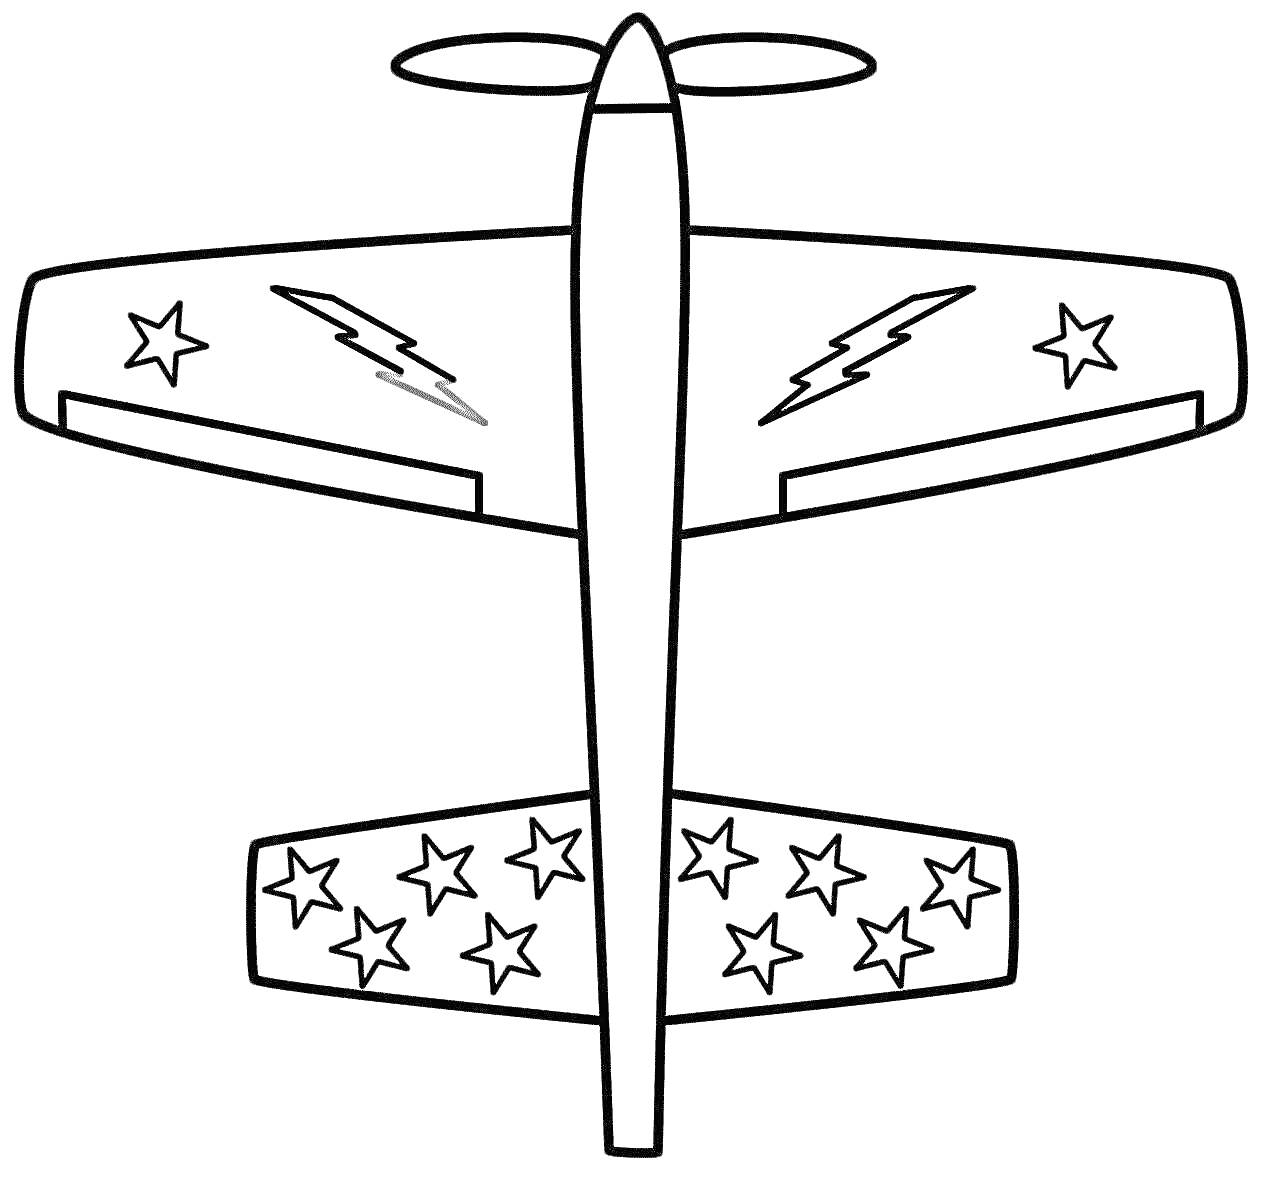 Раскраска Самолет с пропеллером, молниями на крыльях и звездами на хвосте